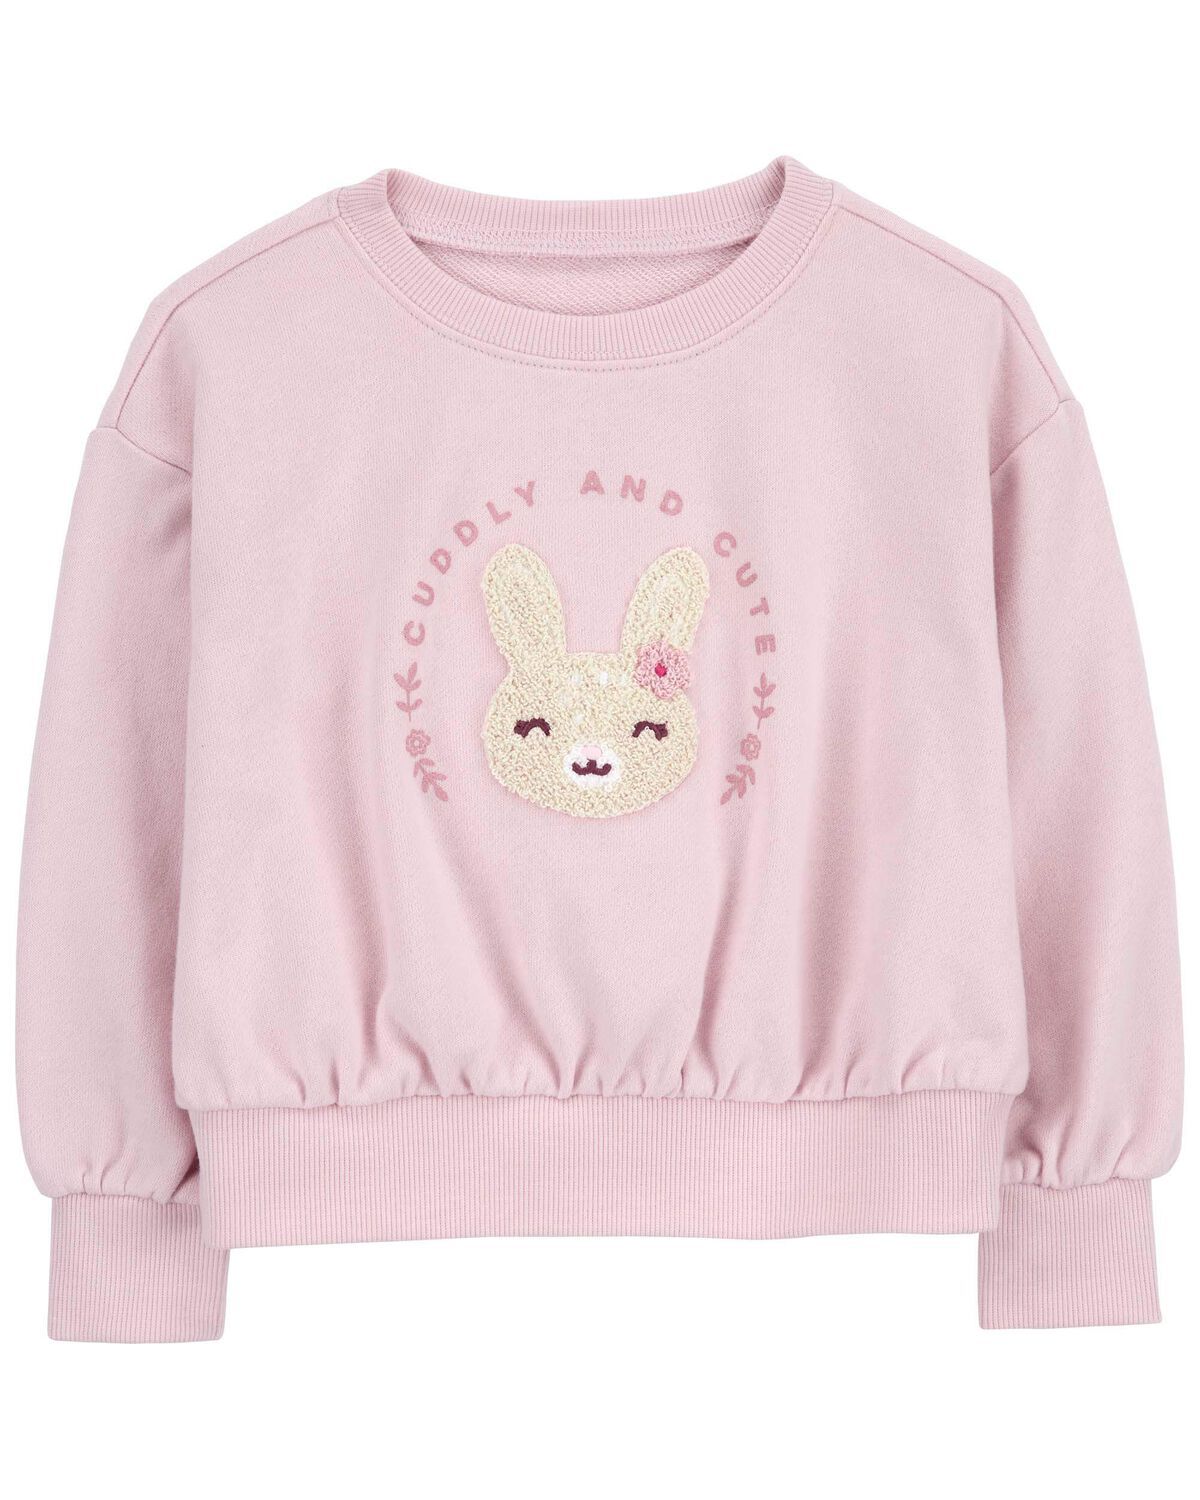 Pink Baby Bunny Active Pullover Sweatshirt | carters.com | Carter's